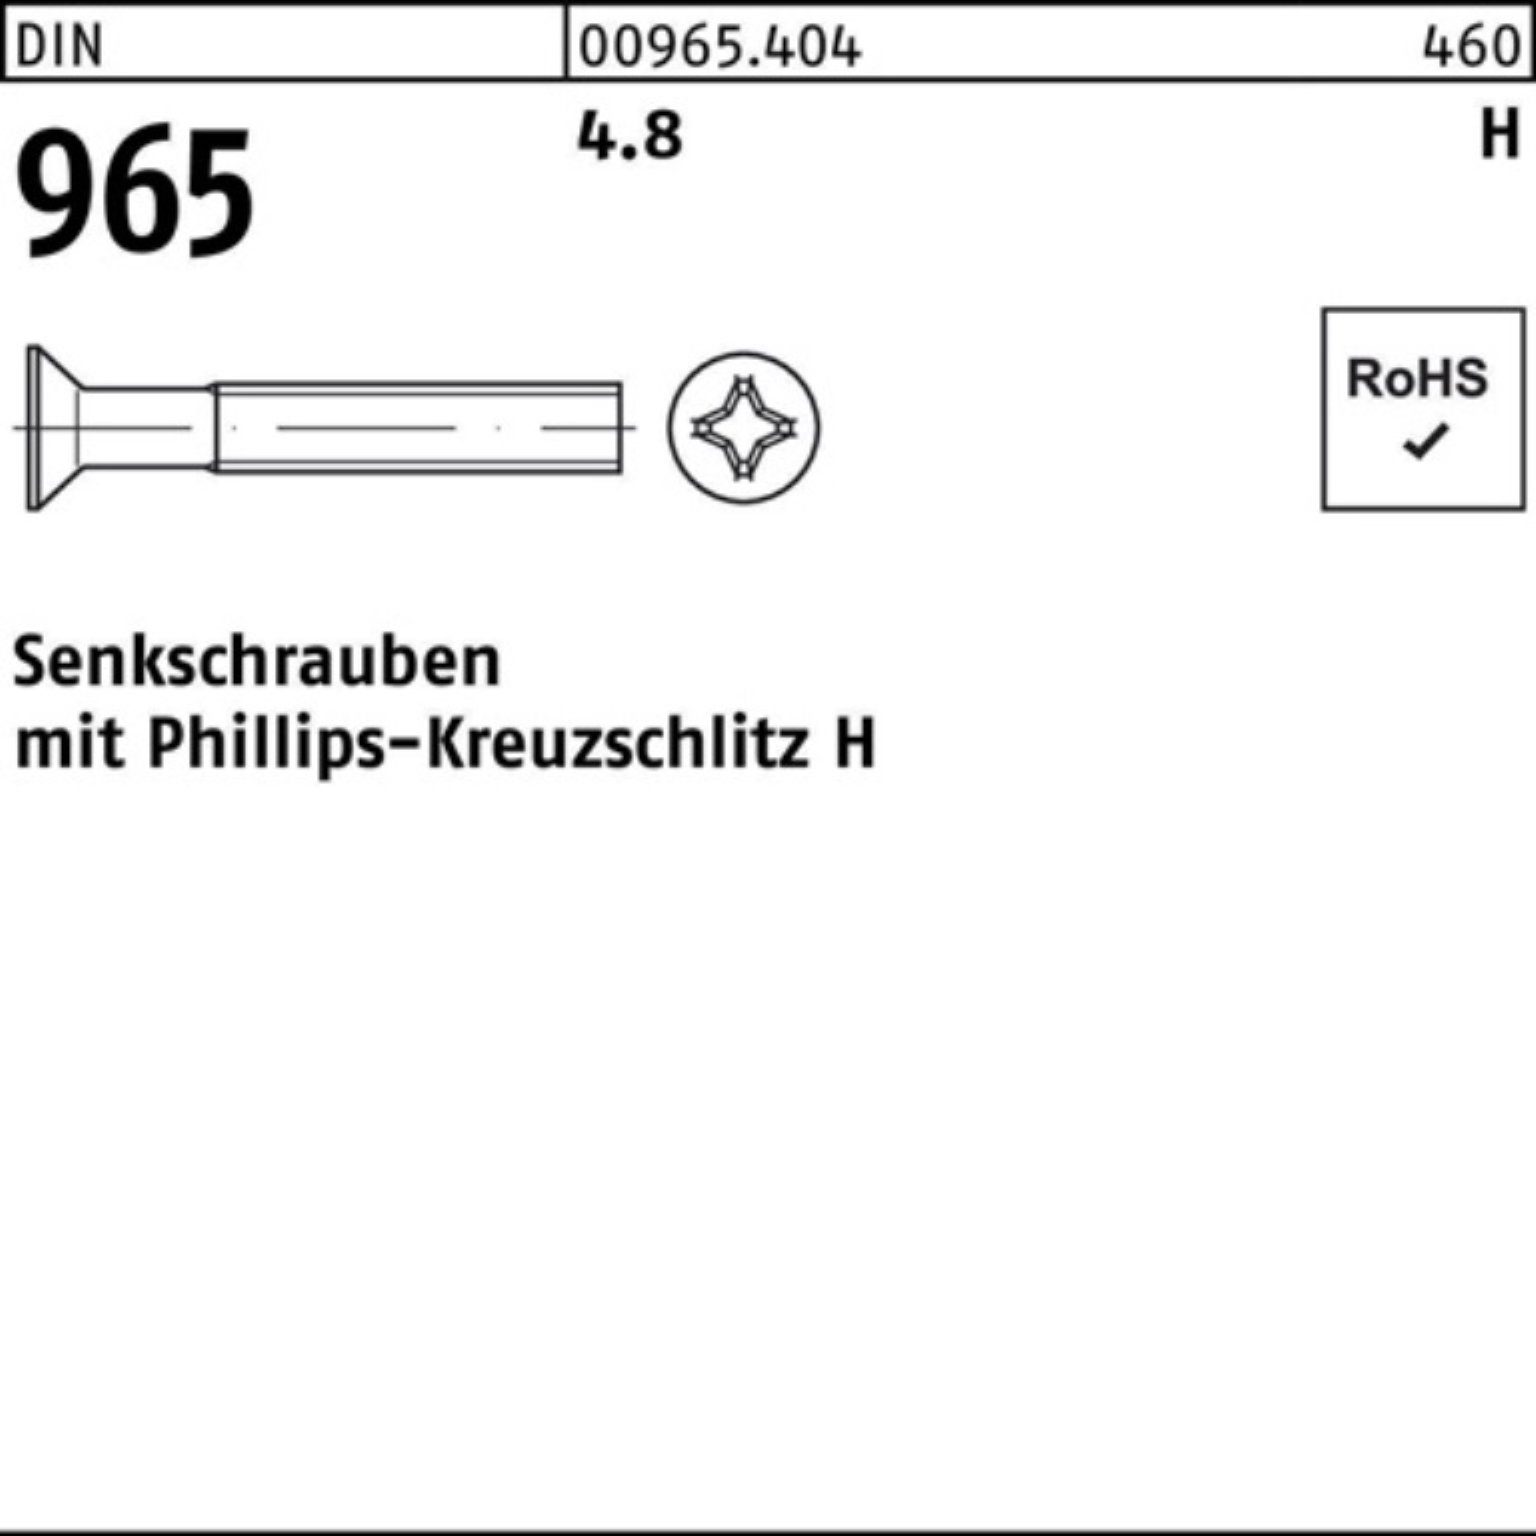 Reyher Senkschraube 200er Stück 30-H DIN 4.8 Senkschraube Pack 965 965 M6x 200 PH 4.8 DIN